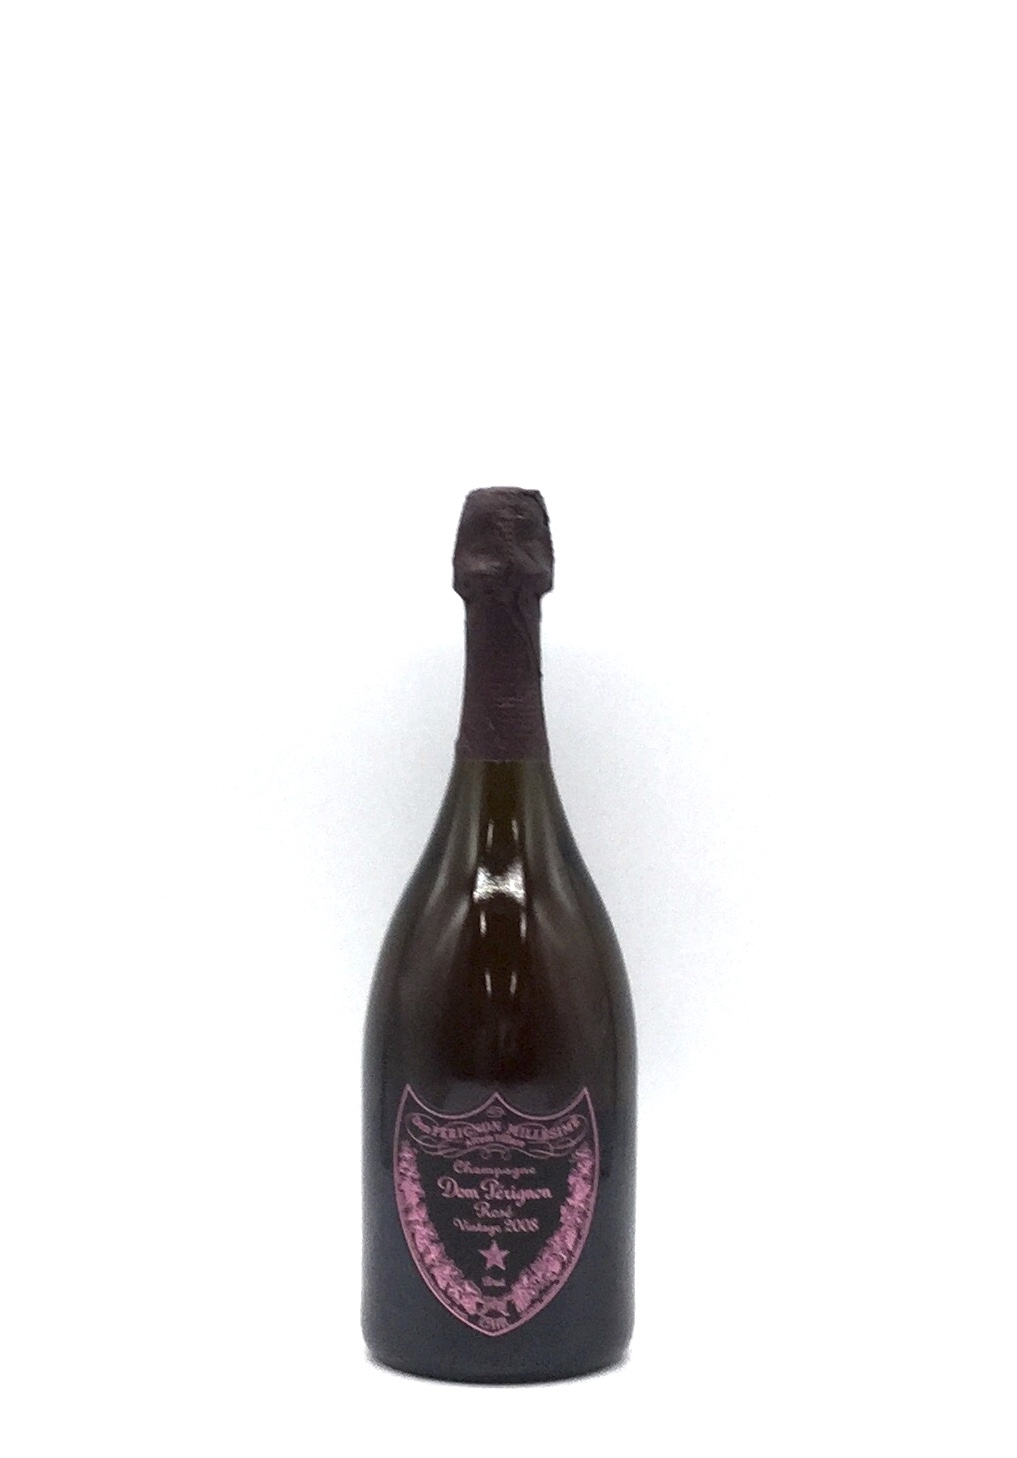 ドンペリドンペリニヨンロゼ 2006 750ml - シャンパン/スパークリング